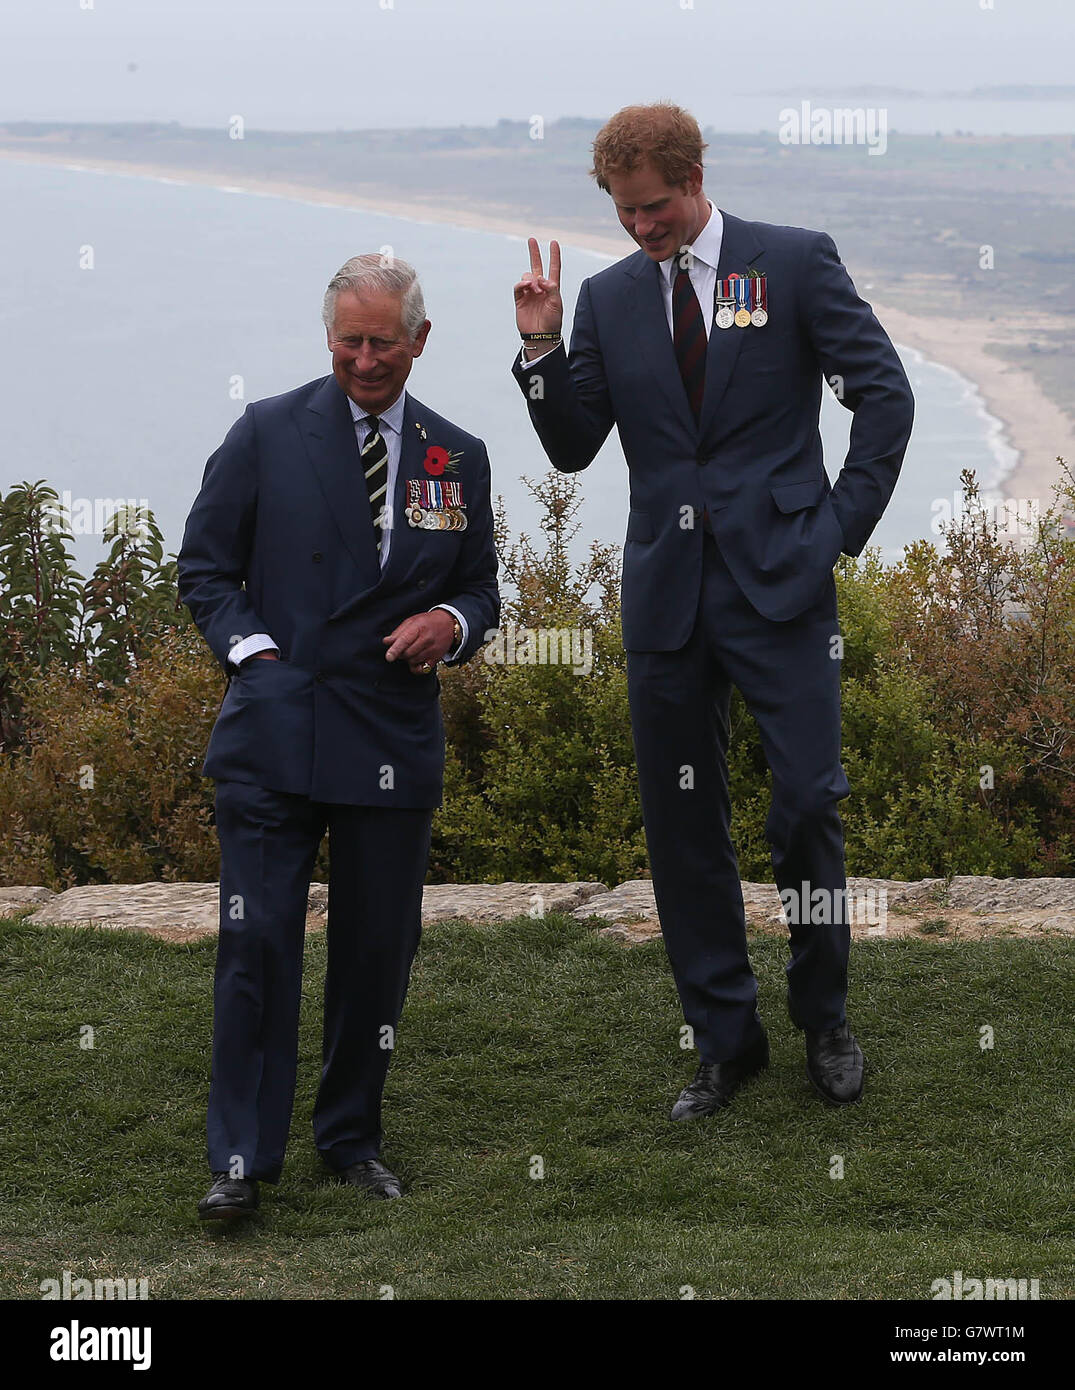 Der Prinz von Wales und Prinz Harry besuchen den Nek, einen schmalen Grat auf dem Schlachtfeld von Anzac auf der Halbinsel Gallipoli, im Rahmen der gedenkfeiern zum 100. Jahrestag der zum Scheitern verurteilten Gallipoli-Kampagne. Stockfoto